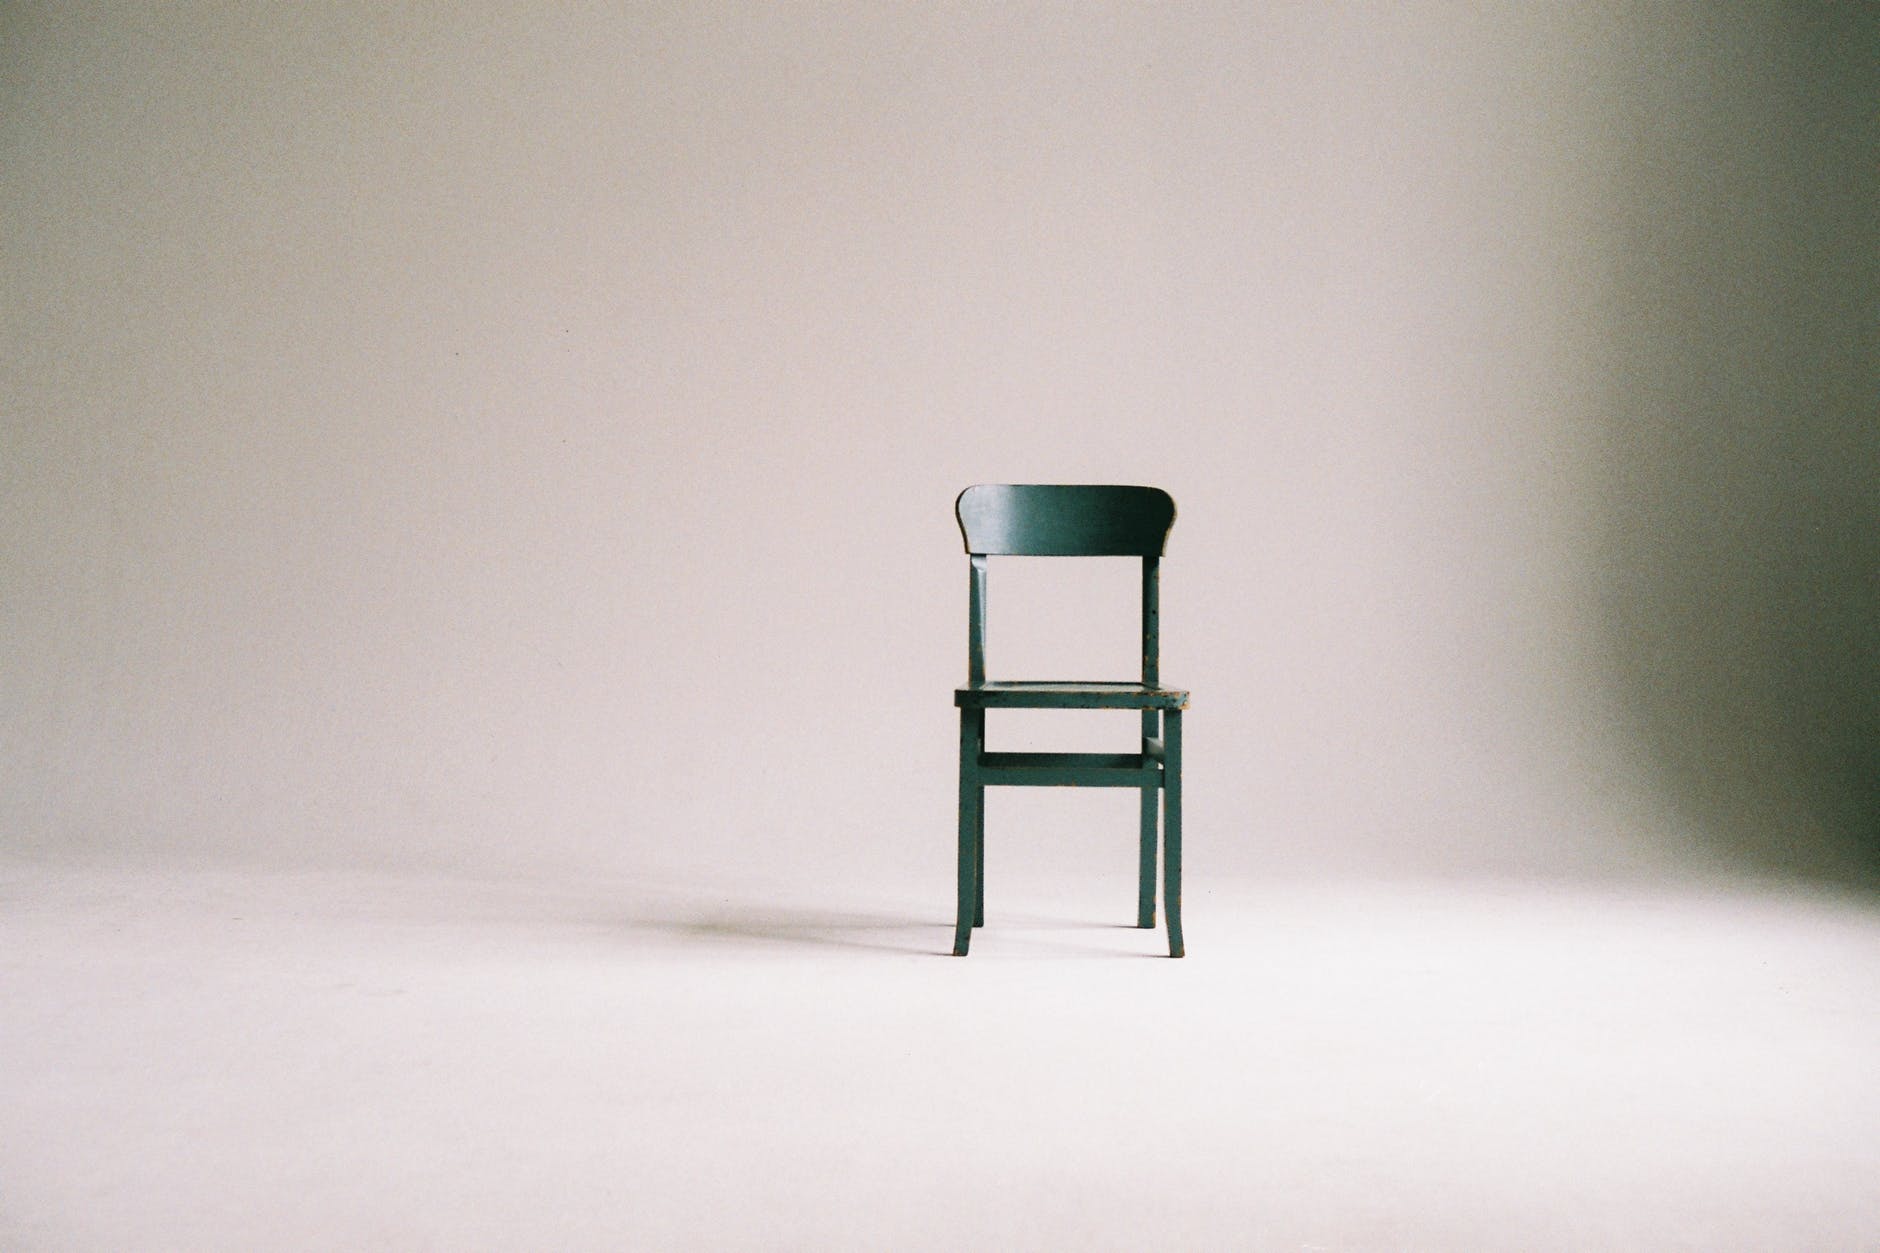 Grøn stol i hvidt lokale